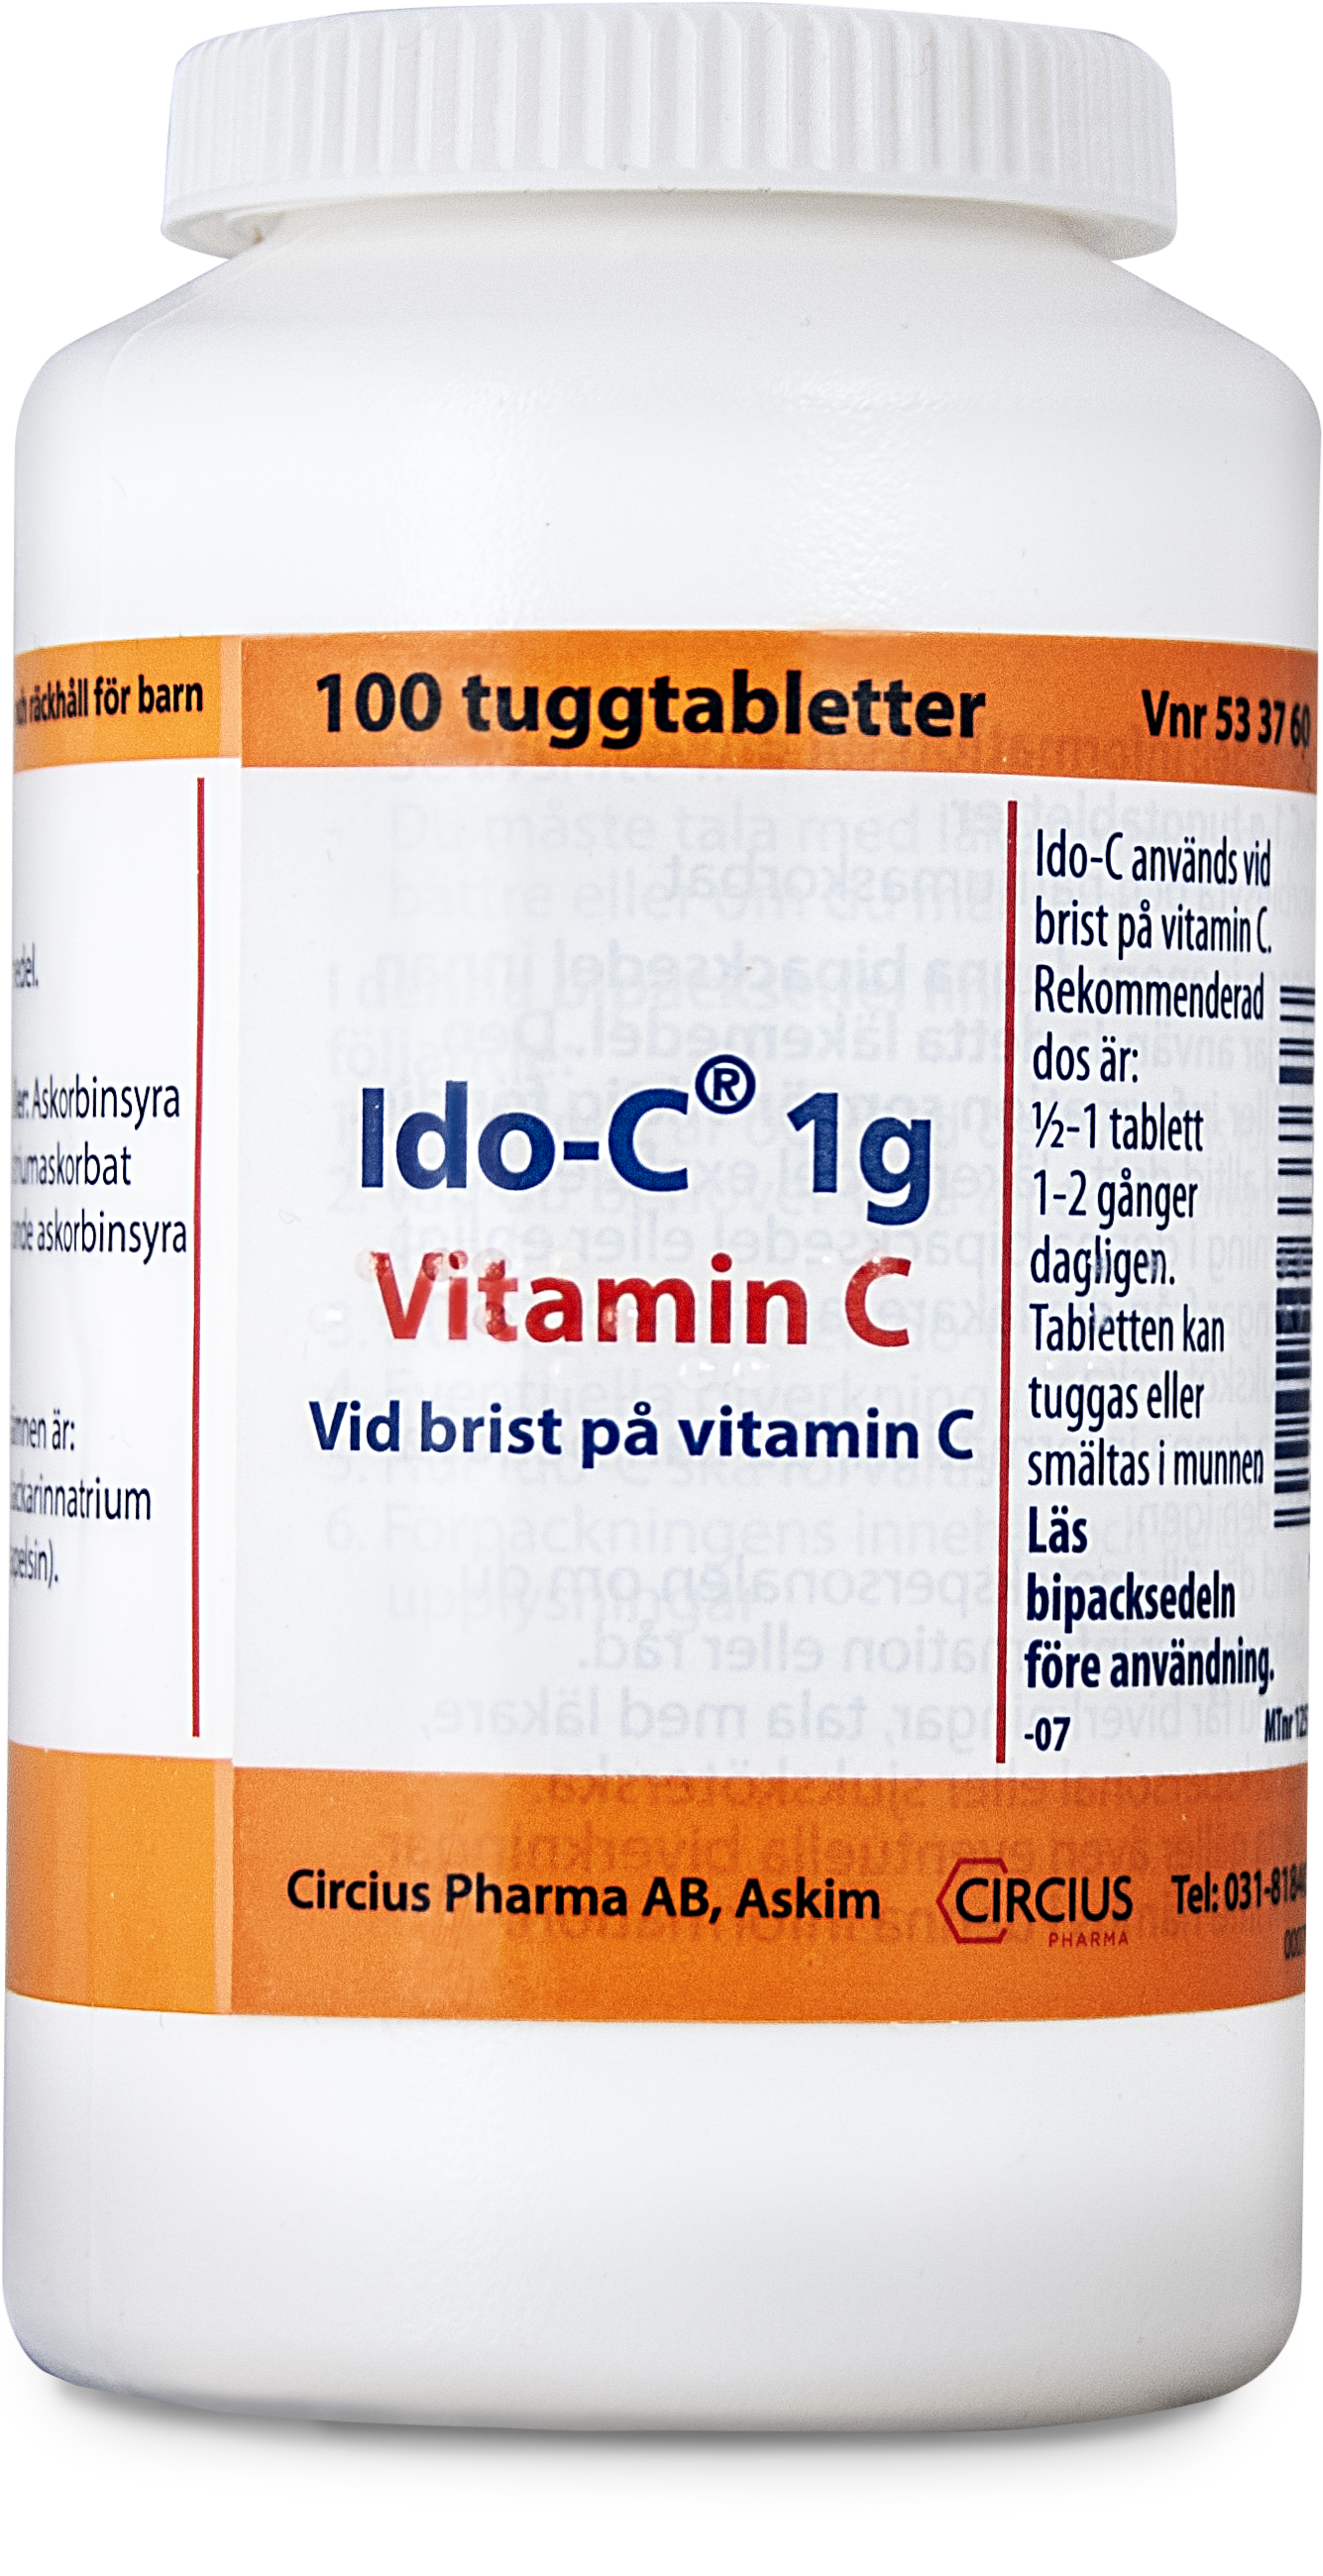 Ido-C 1 g Vitamin C 100 tuggtabletter